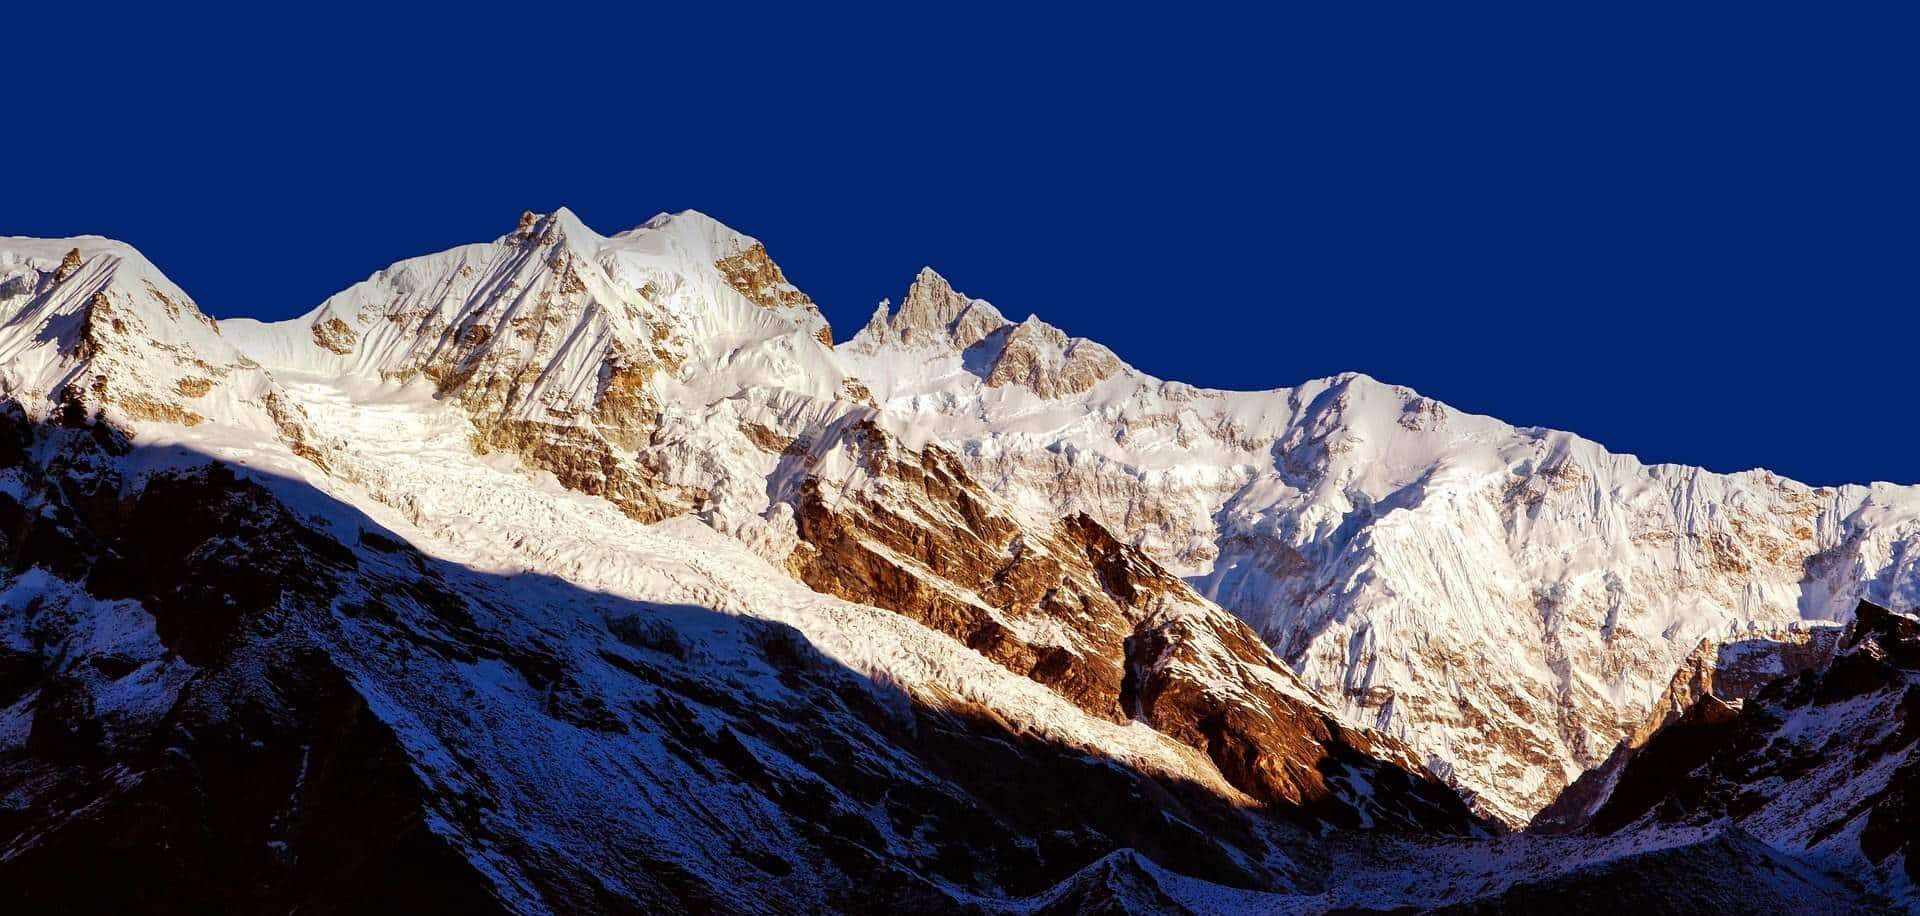 Горы Гималаи гора Канченджанга